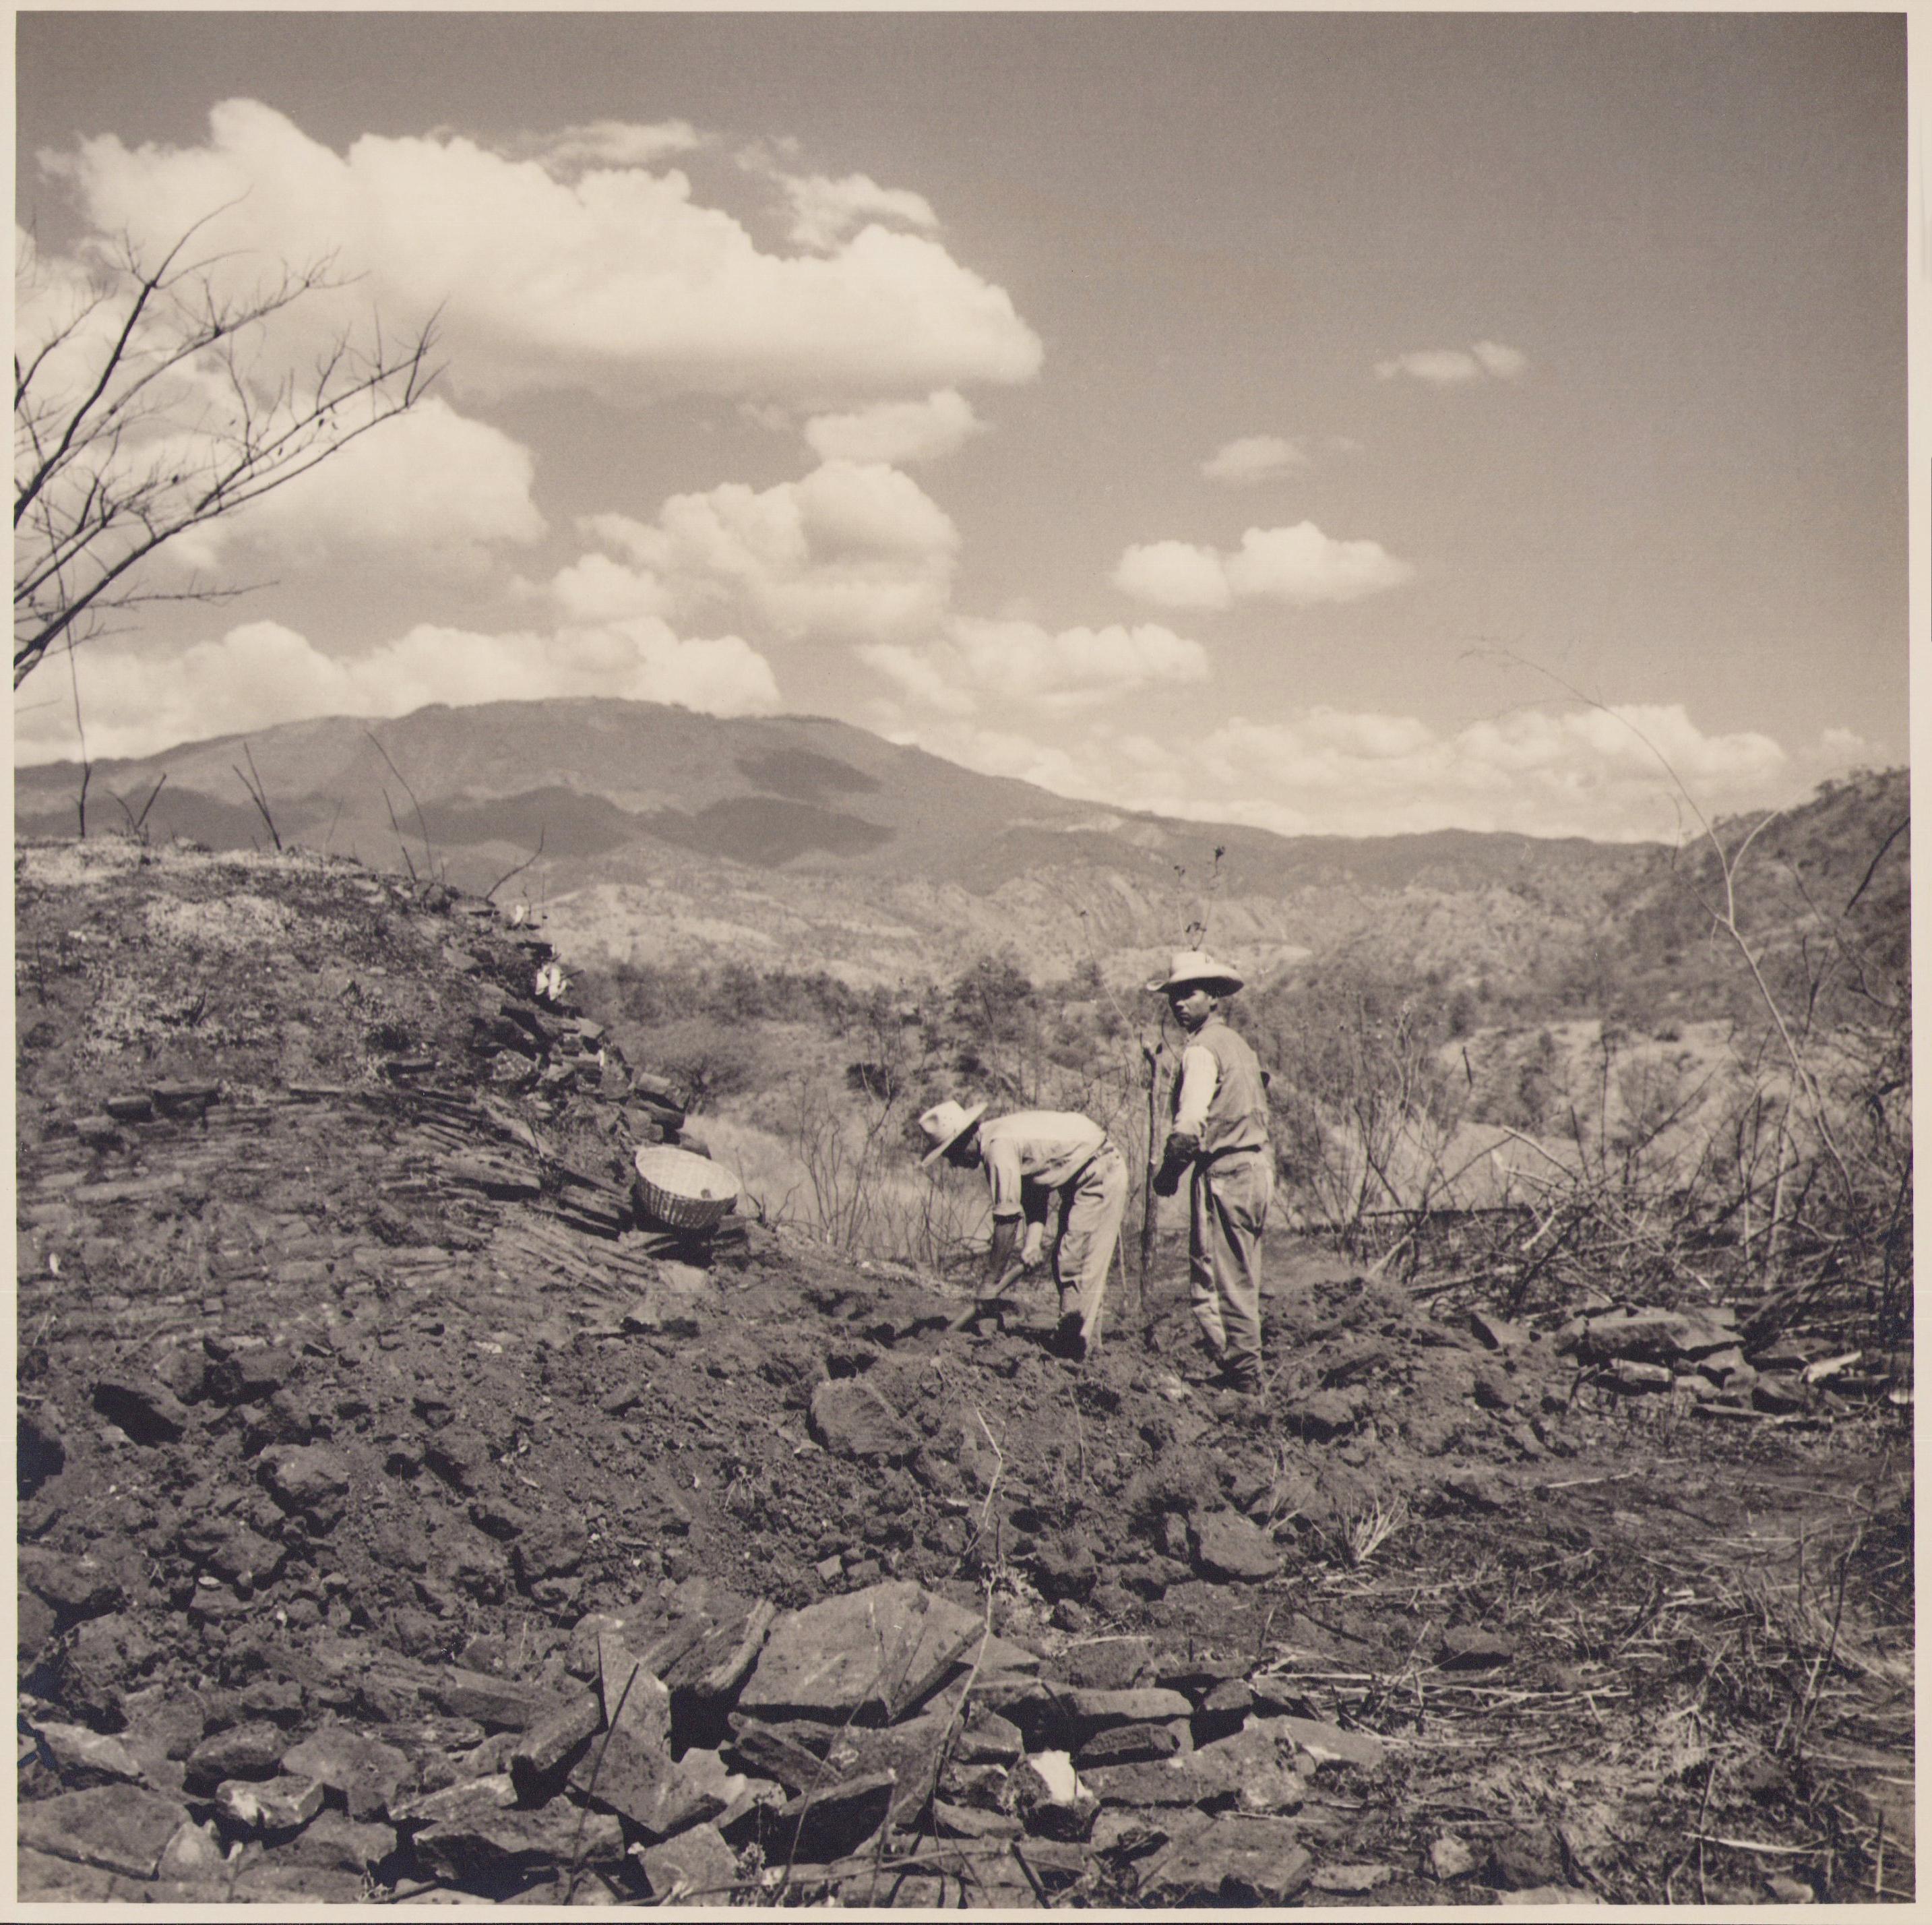 Hanna Seidel Black and White Photograph – Guatemala, Bauer, Schwarz-Weiß-Fotografie, ca. 1960er Jahre, 24,2 x 24 cm